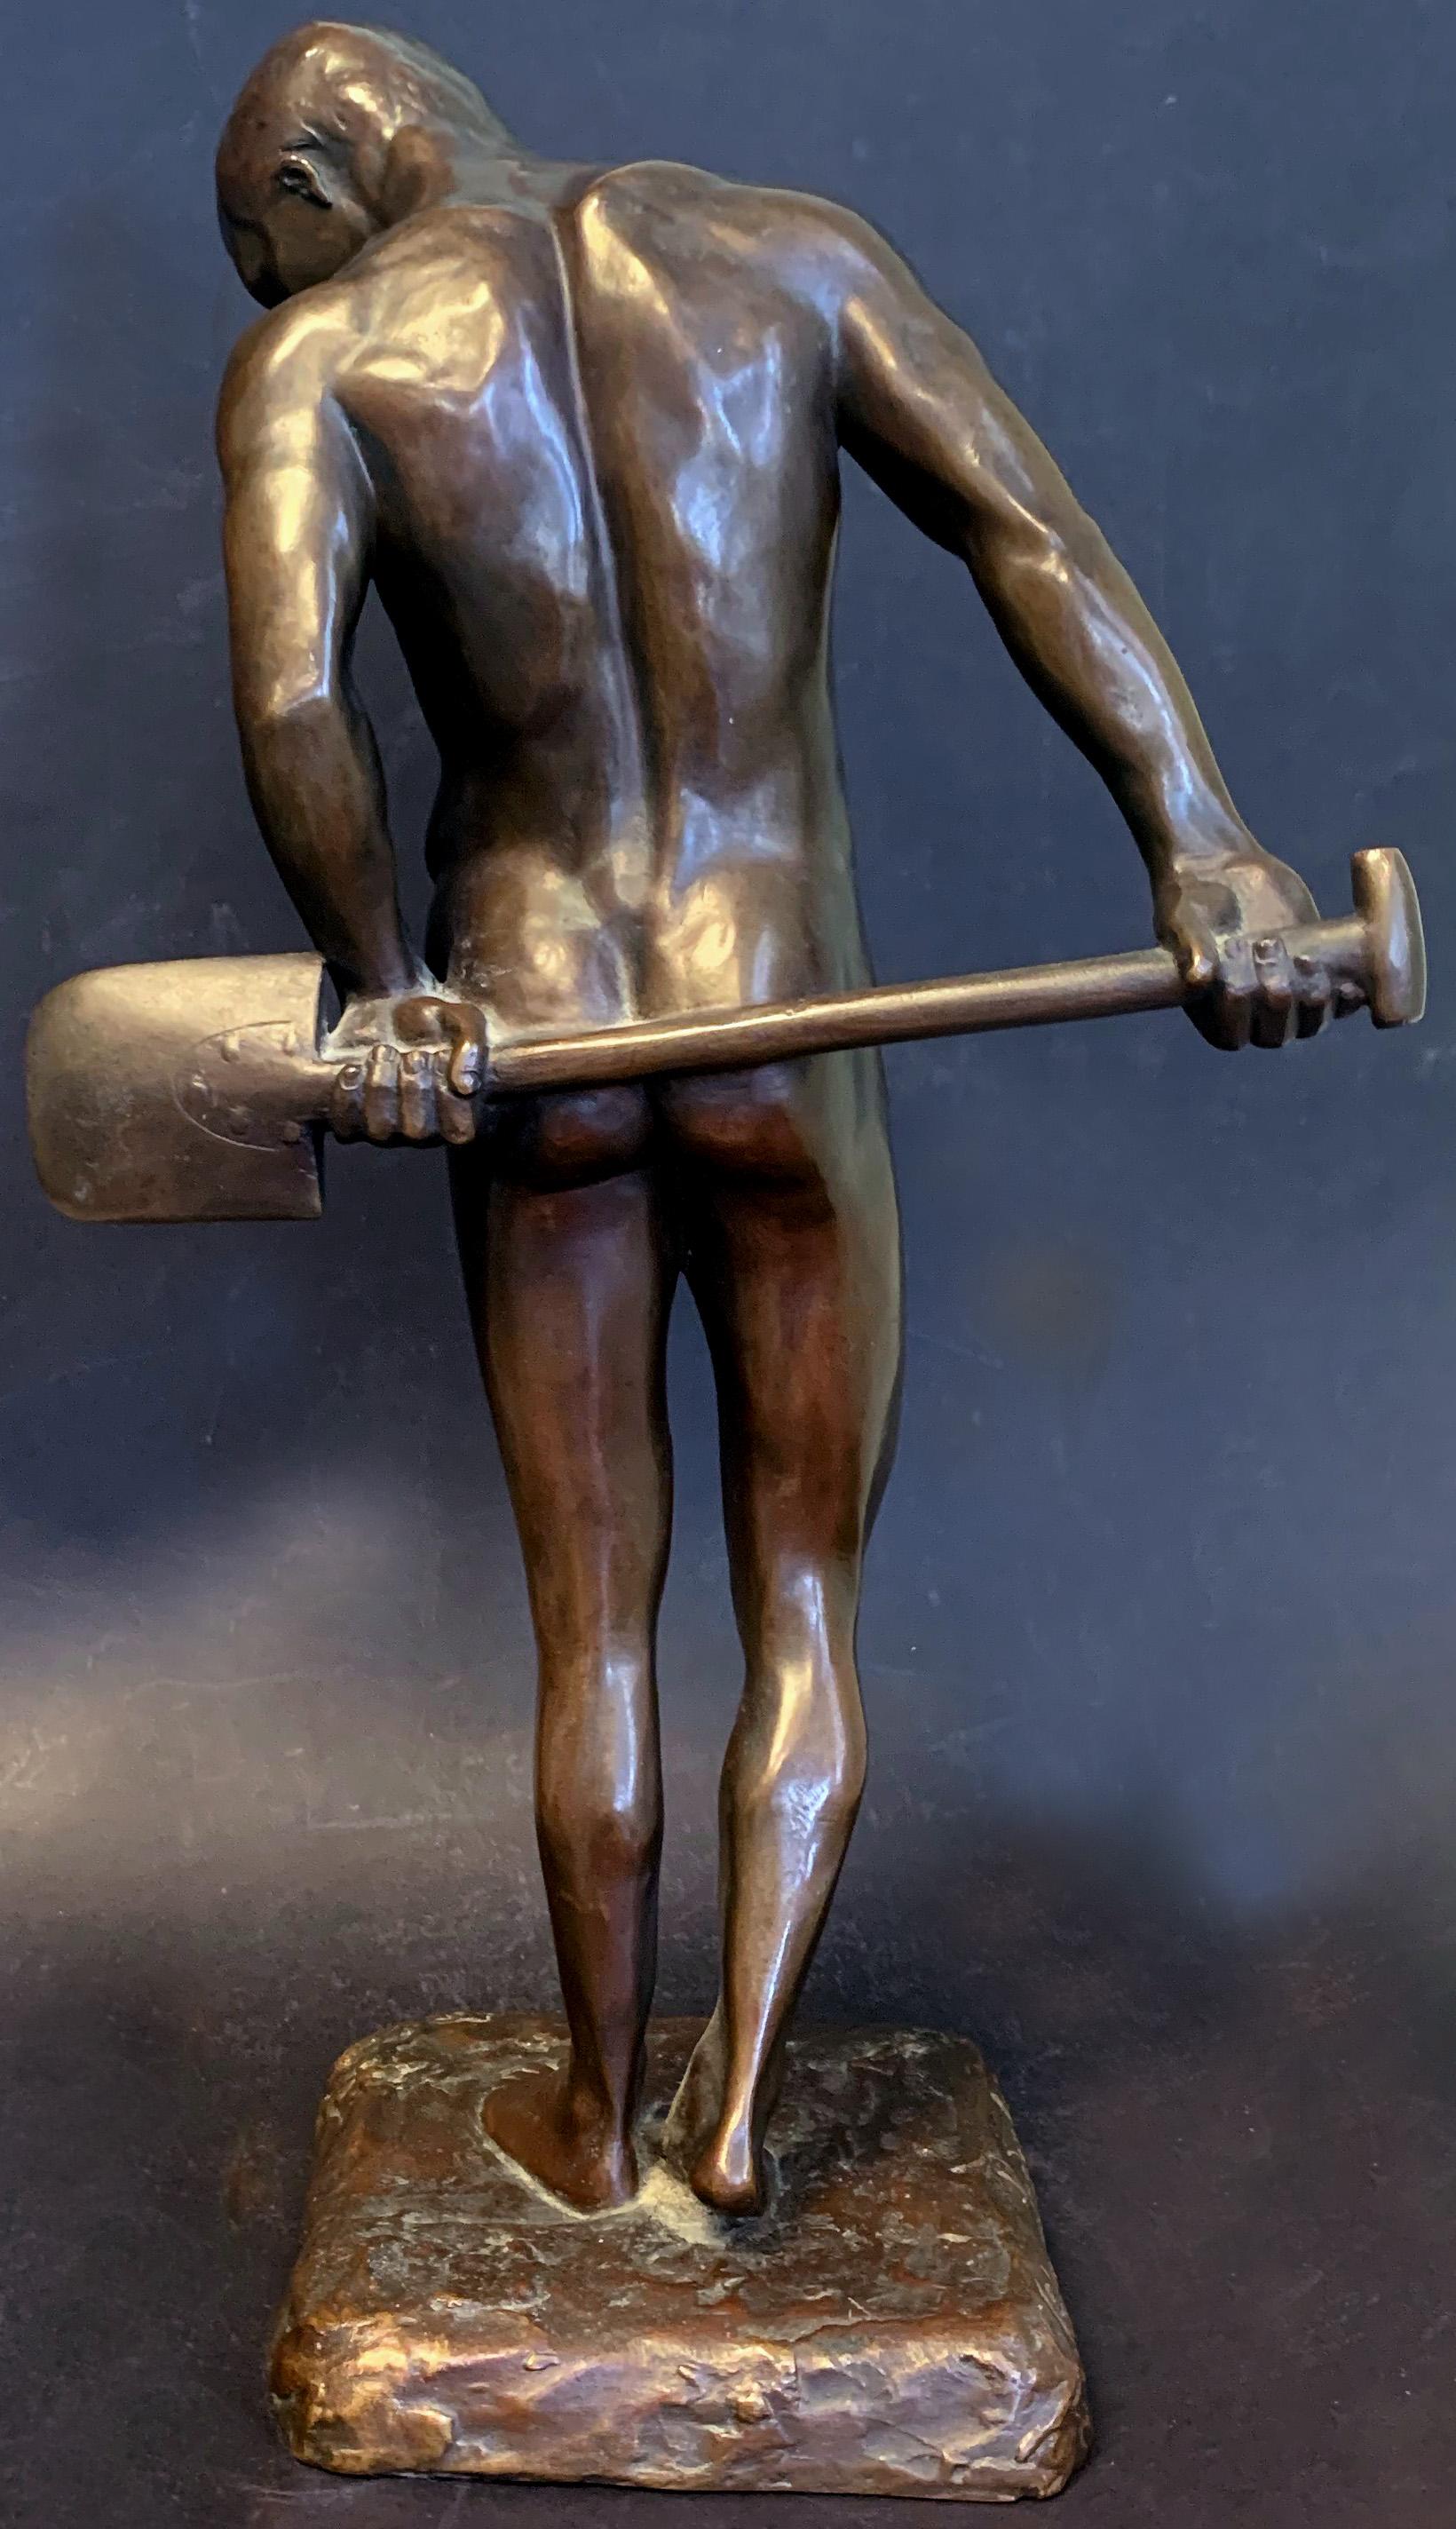 Œuvre rare d'Oskar Lindenberg, un sculpteur allemand qui a produit peu de pièces durant ses années productives, ce beau bronze d'homme nu capture son sujet avec la tête tournée vers le bas et la gauche, les mains derrière lui, tenant une pelle en